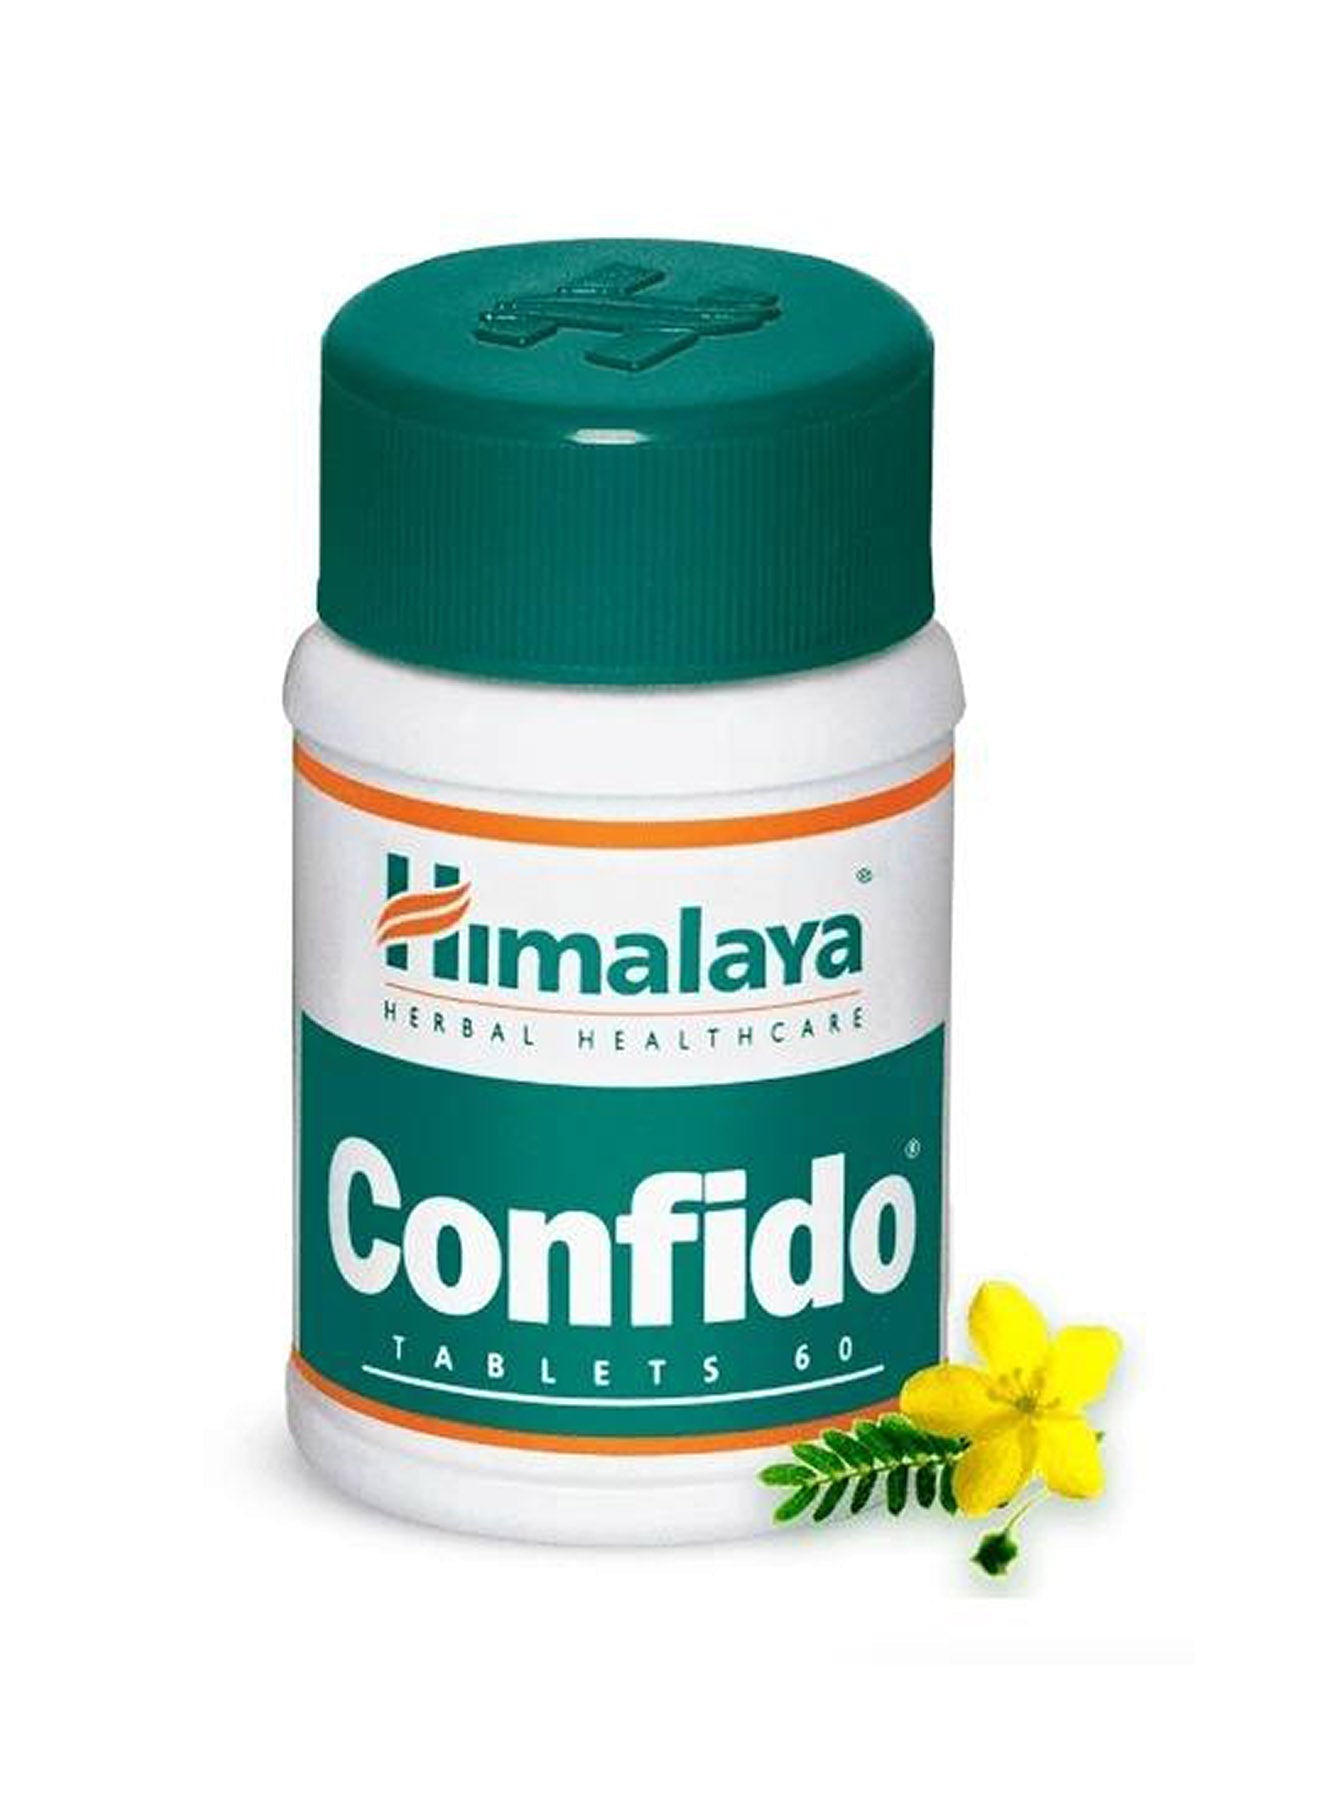 Himalaya Confido Herbal Healthcare 60 Tablets